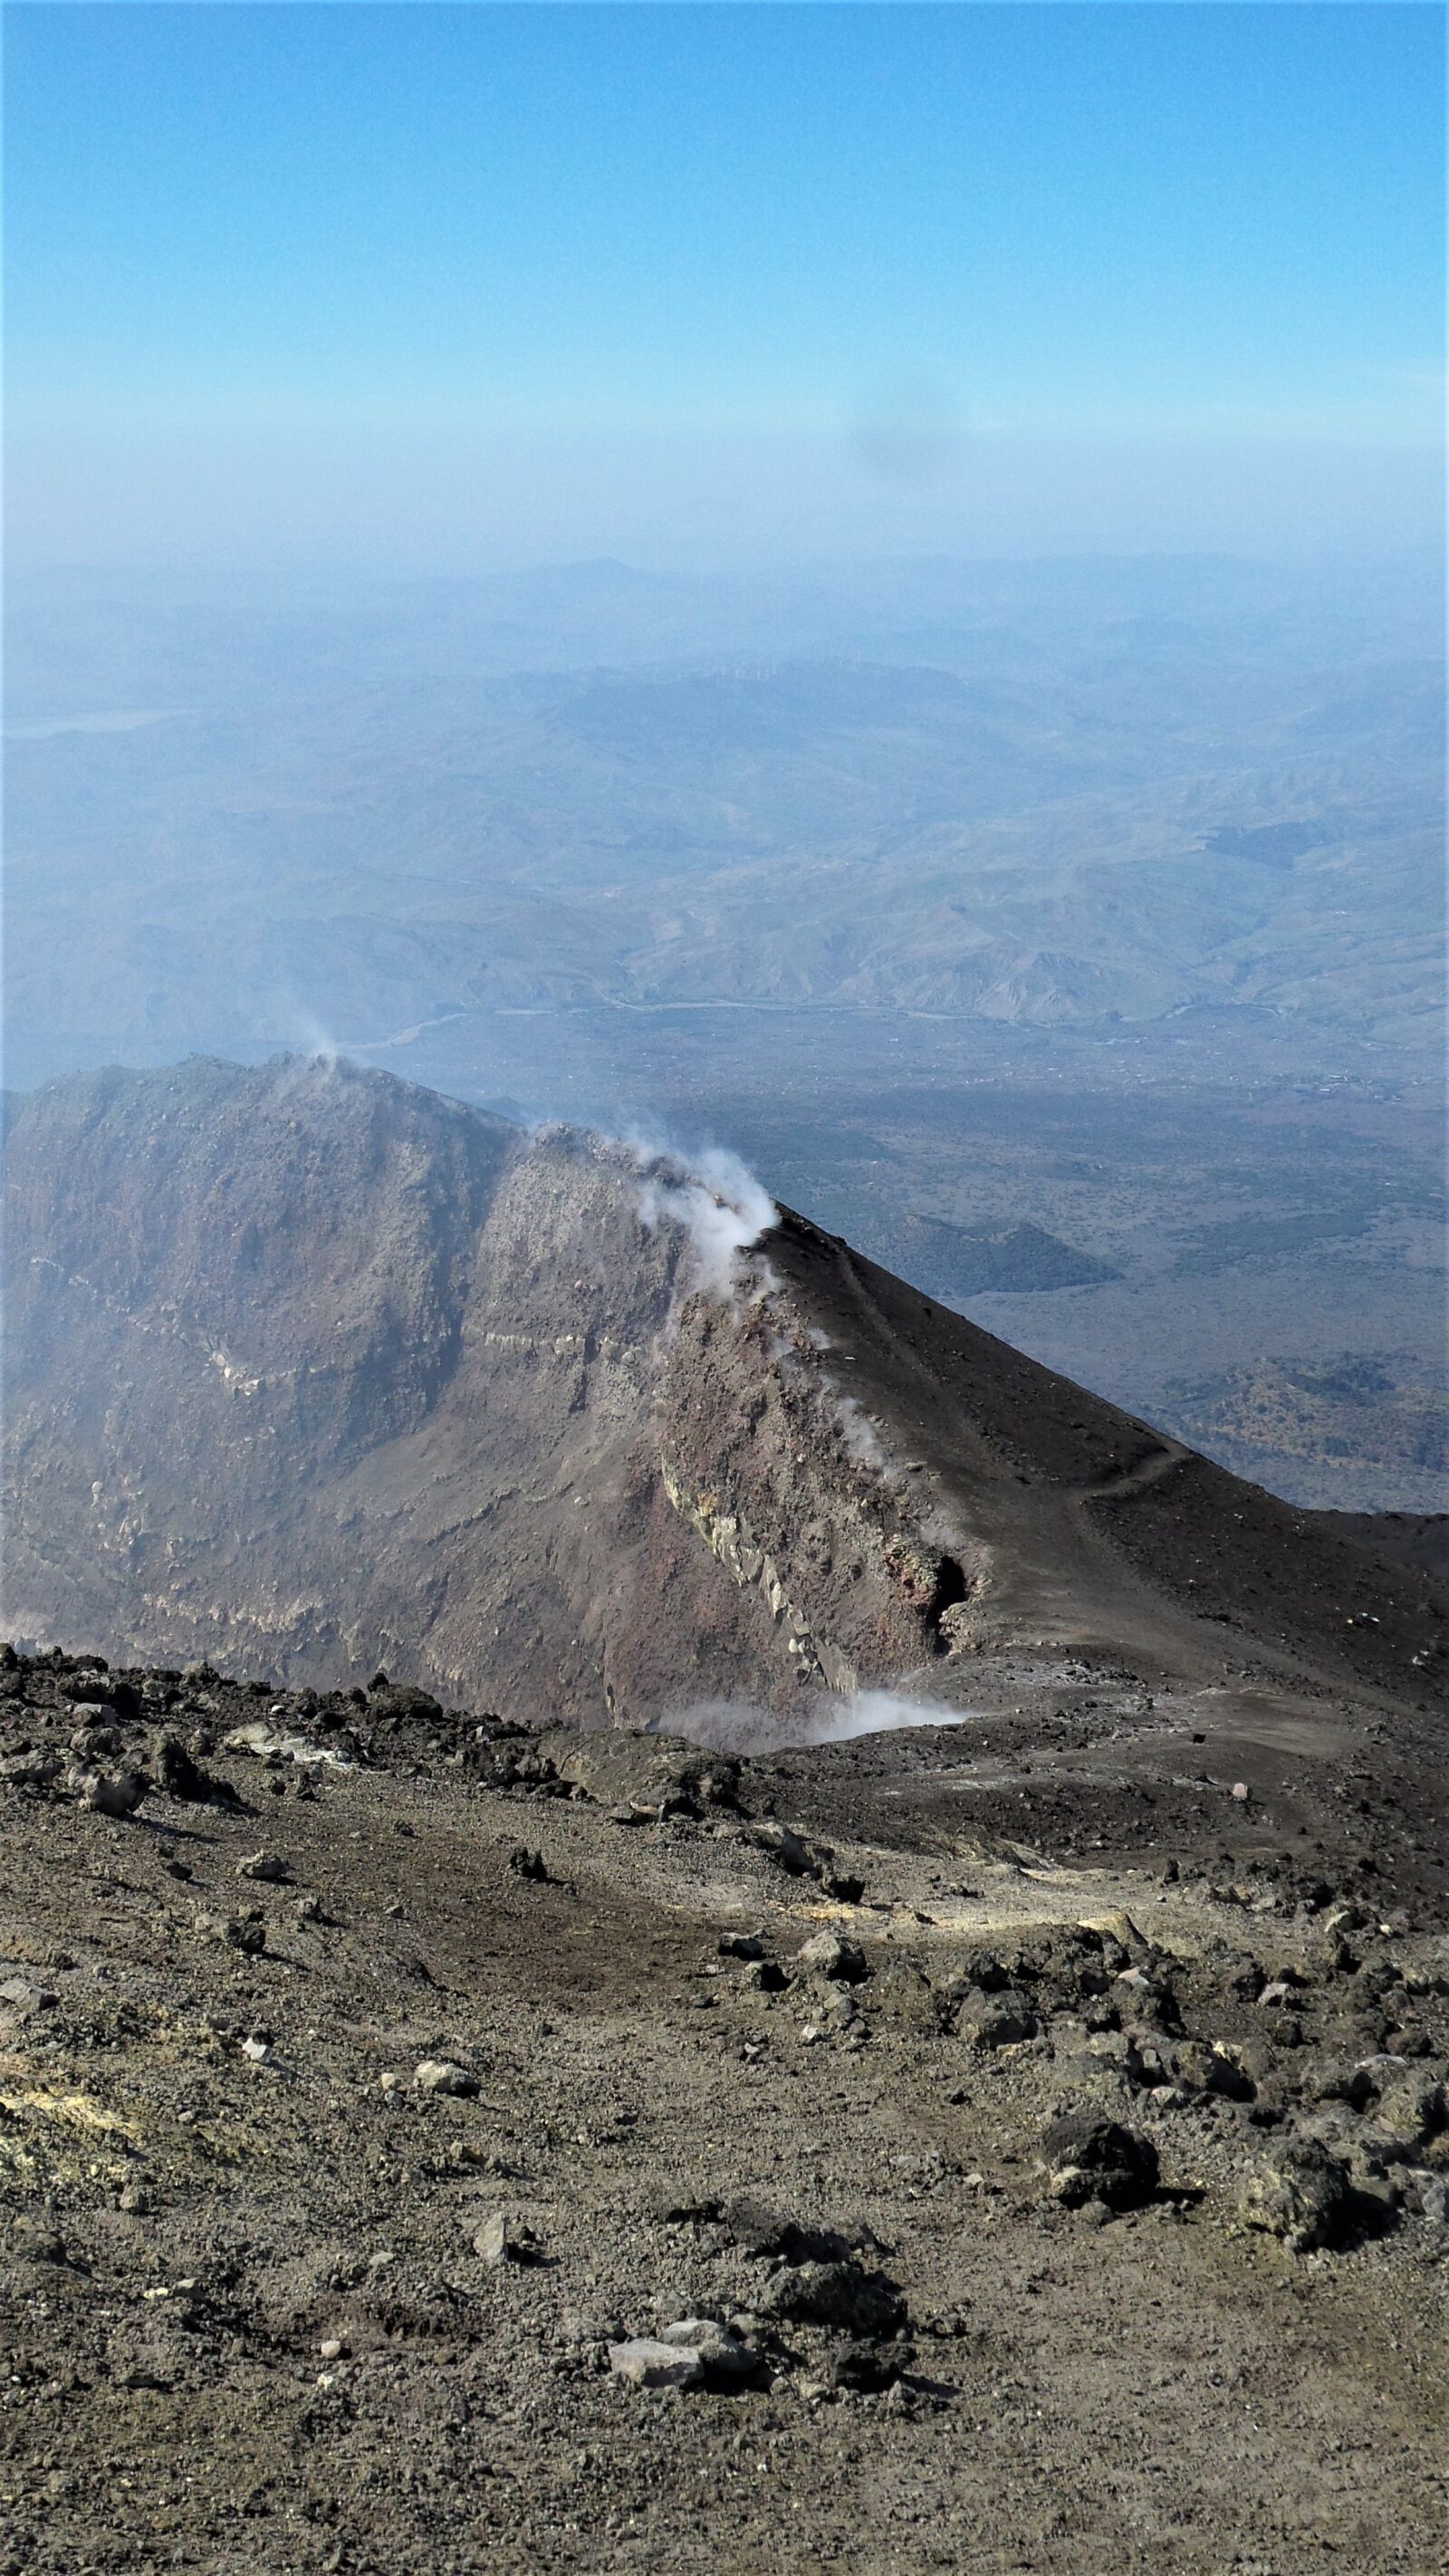 Samsung Galaxy S4 Zoom sample photo. Etna, italy, volcano photography